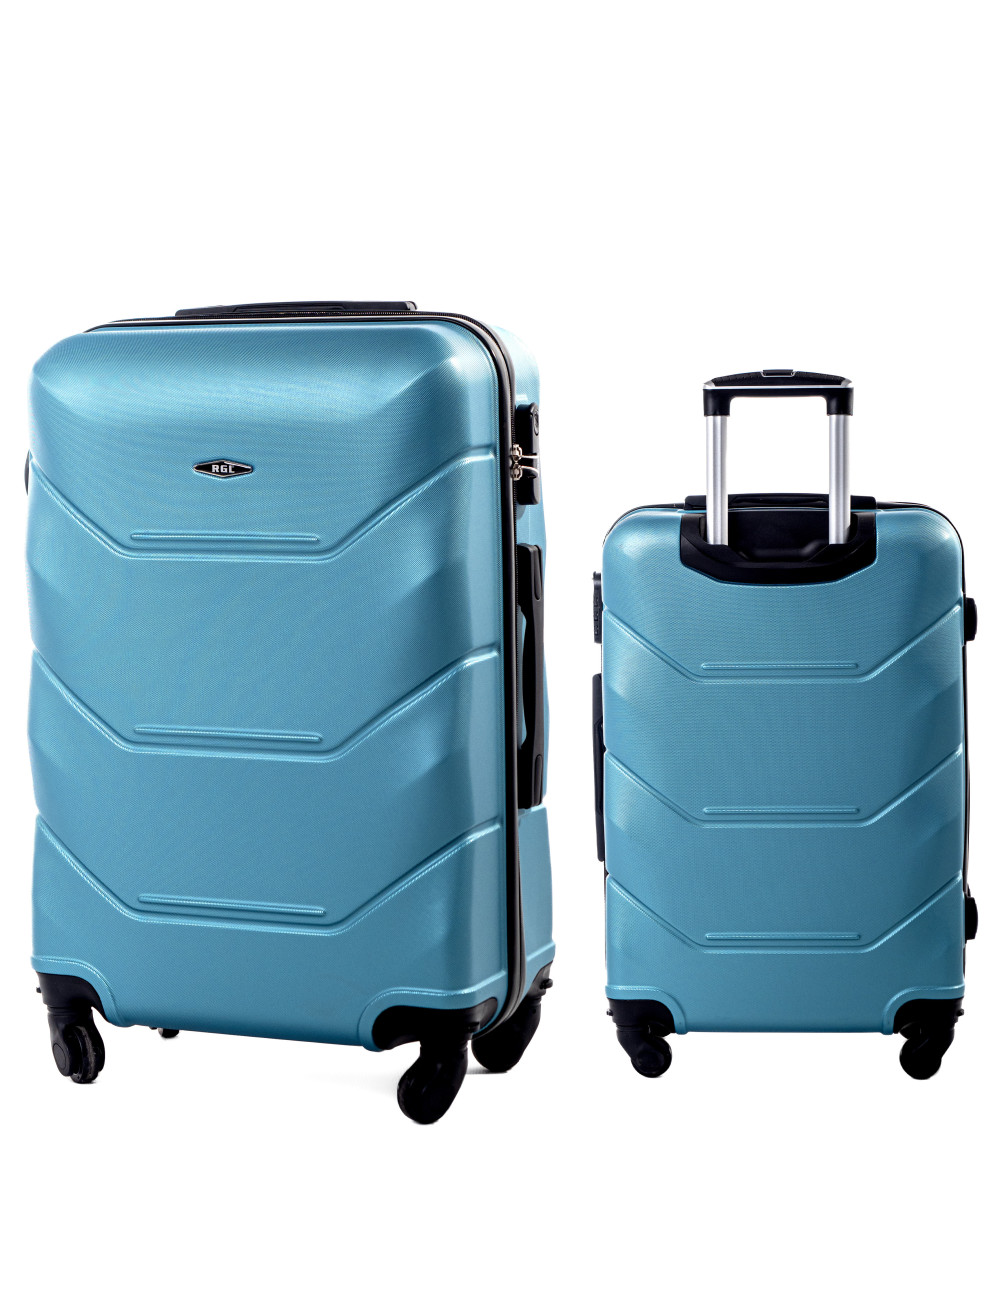 Duża walizka podróżna na kółkach XXL 720 RGL - niebieski metaliczny